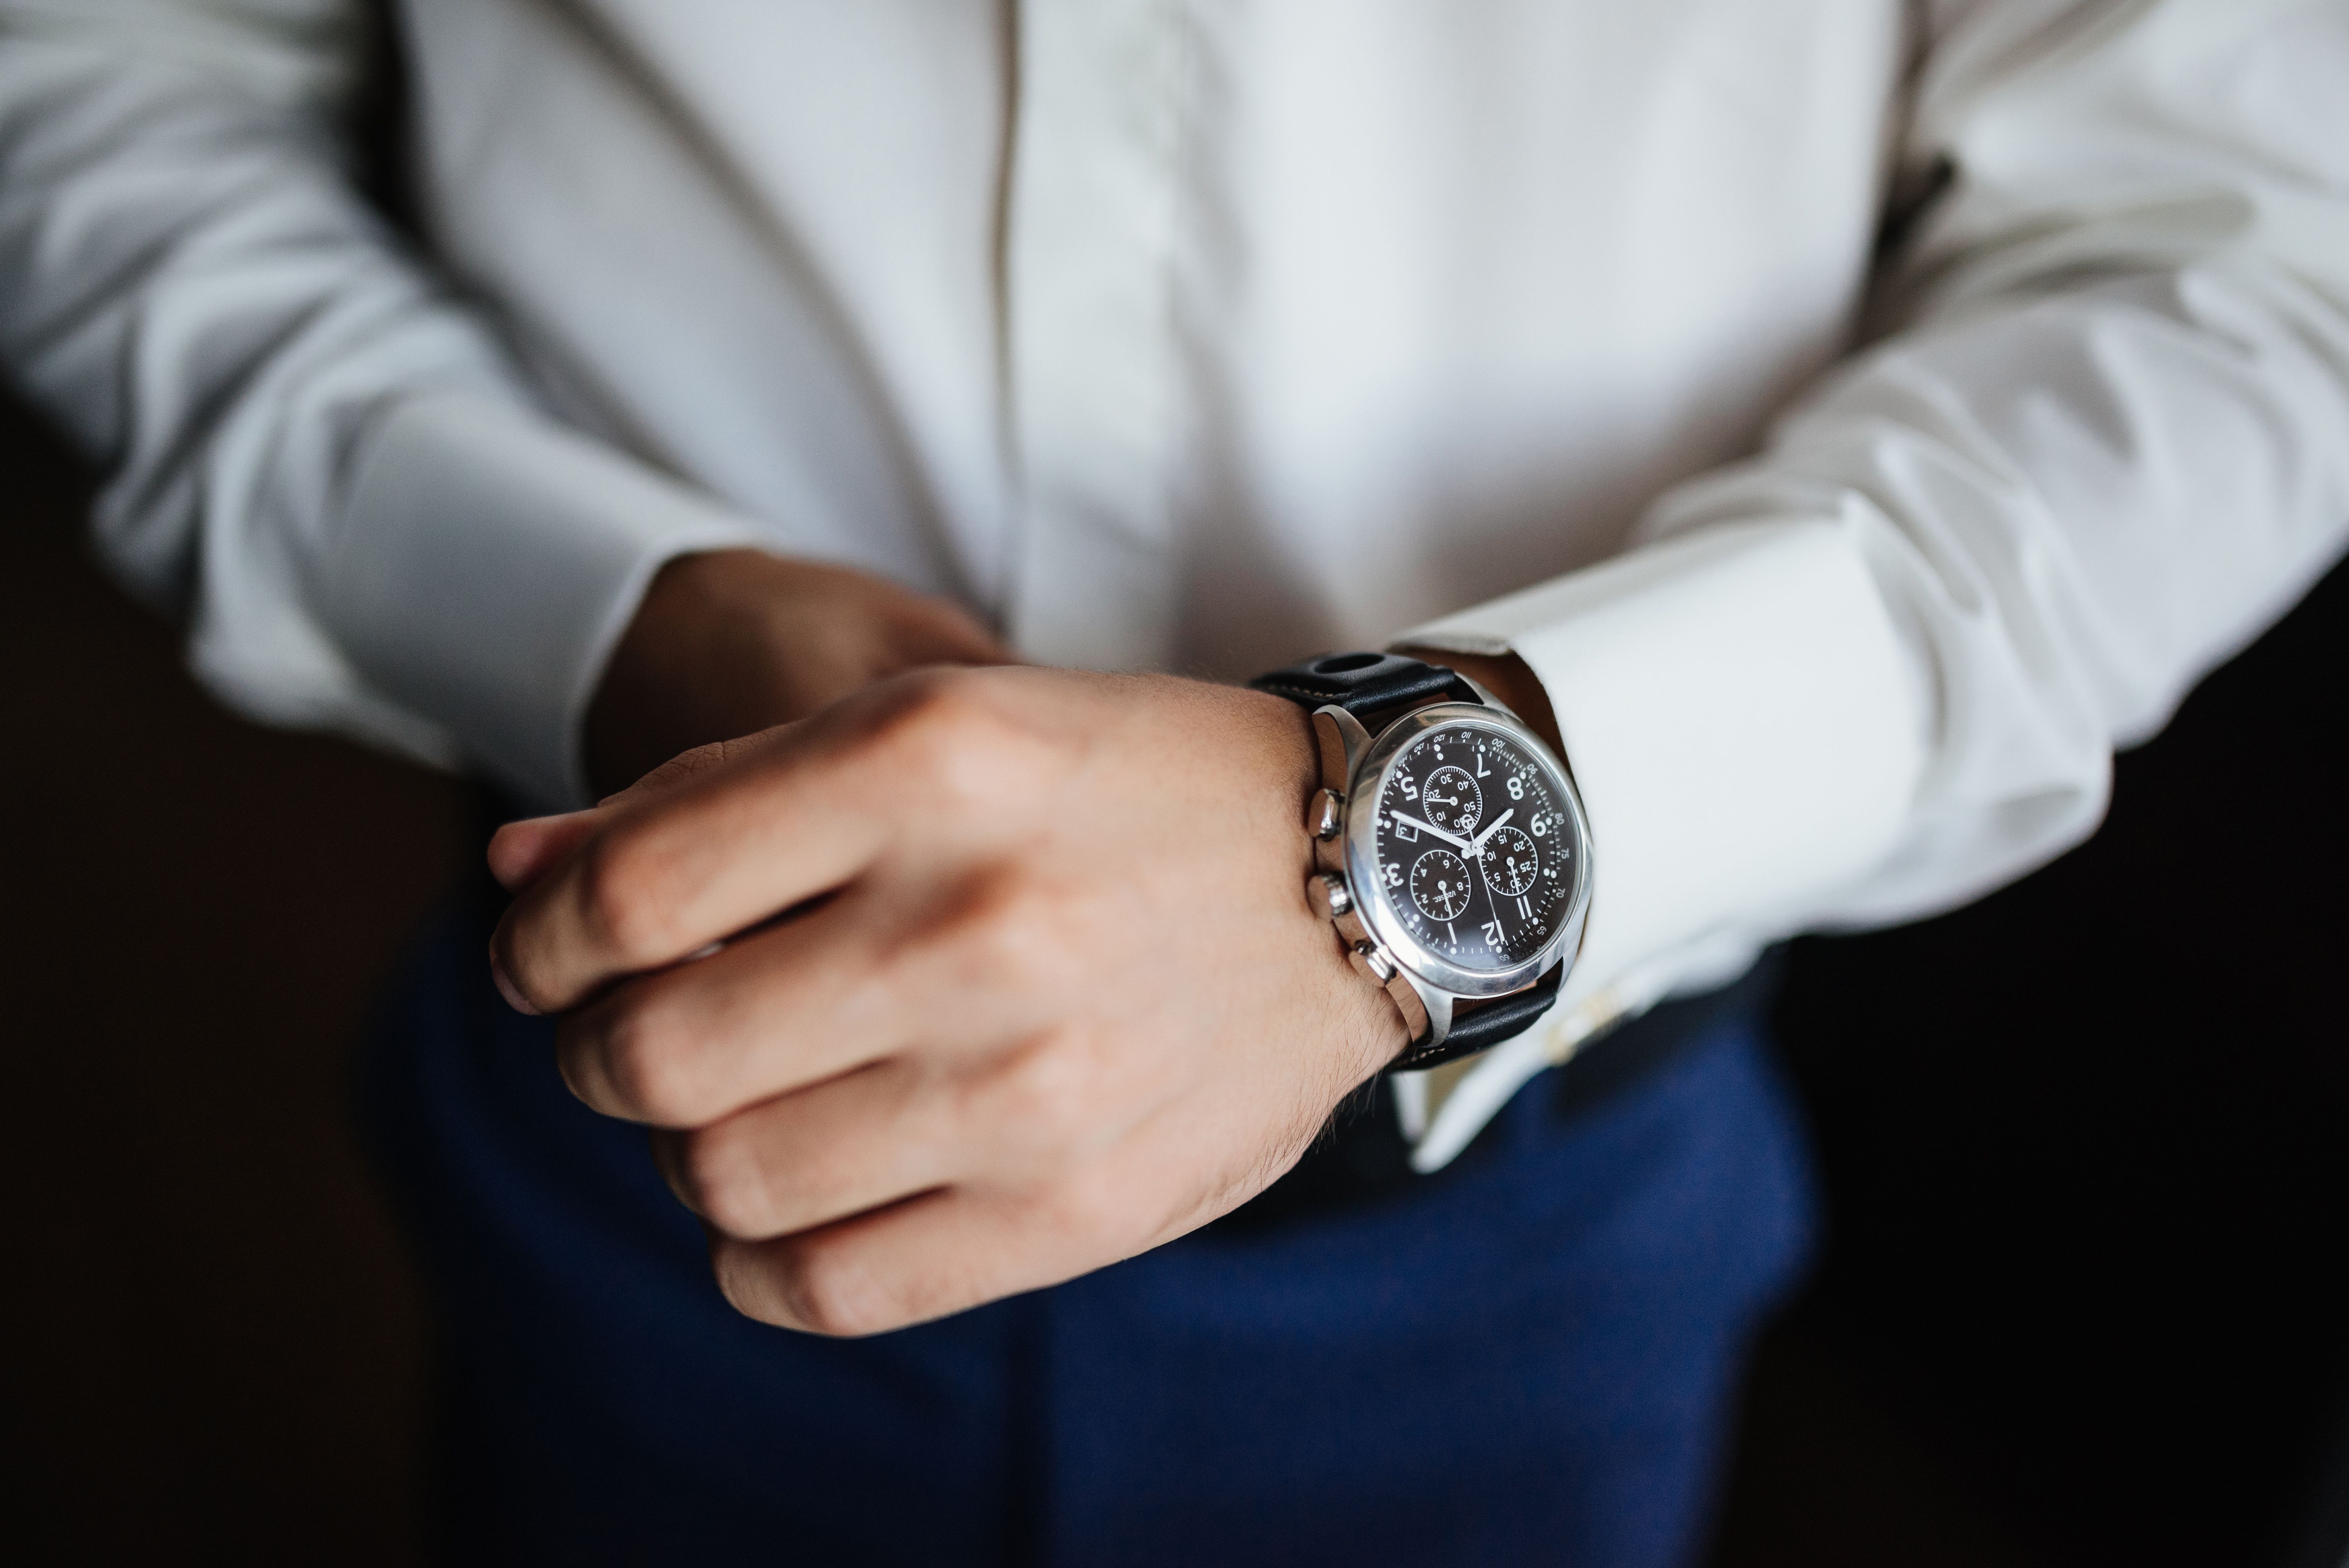 Business watches. Часы на руке мужчины. Мужчина с часами на руке. Рука с часами. Часы на руке у мужчины серебристые.